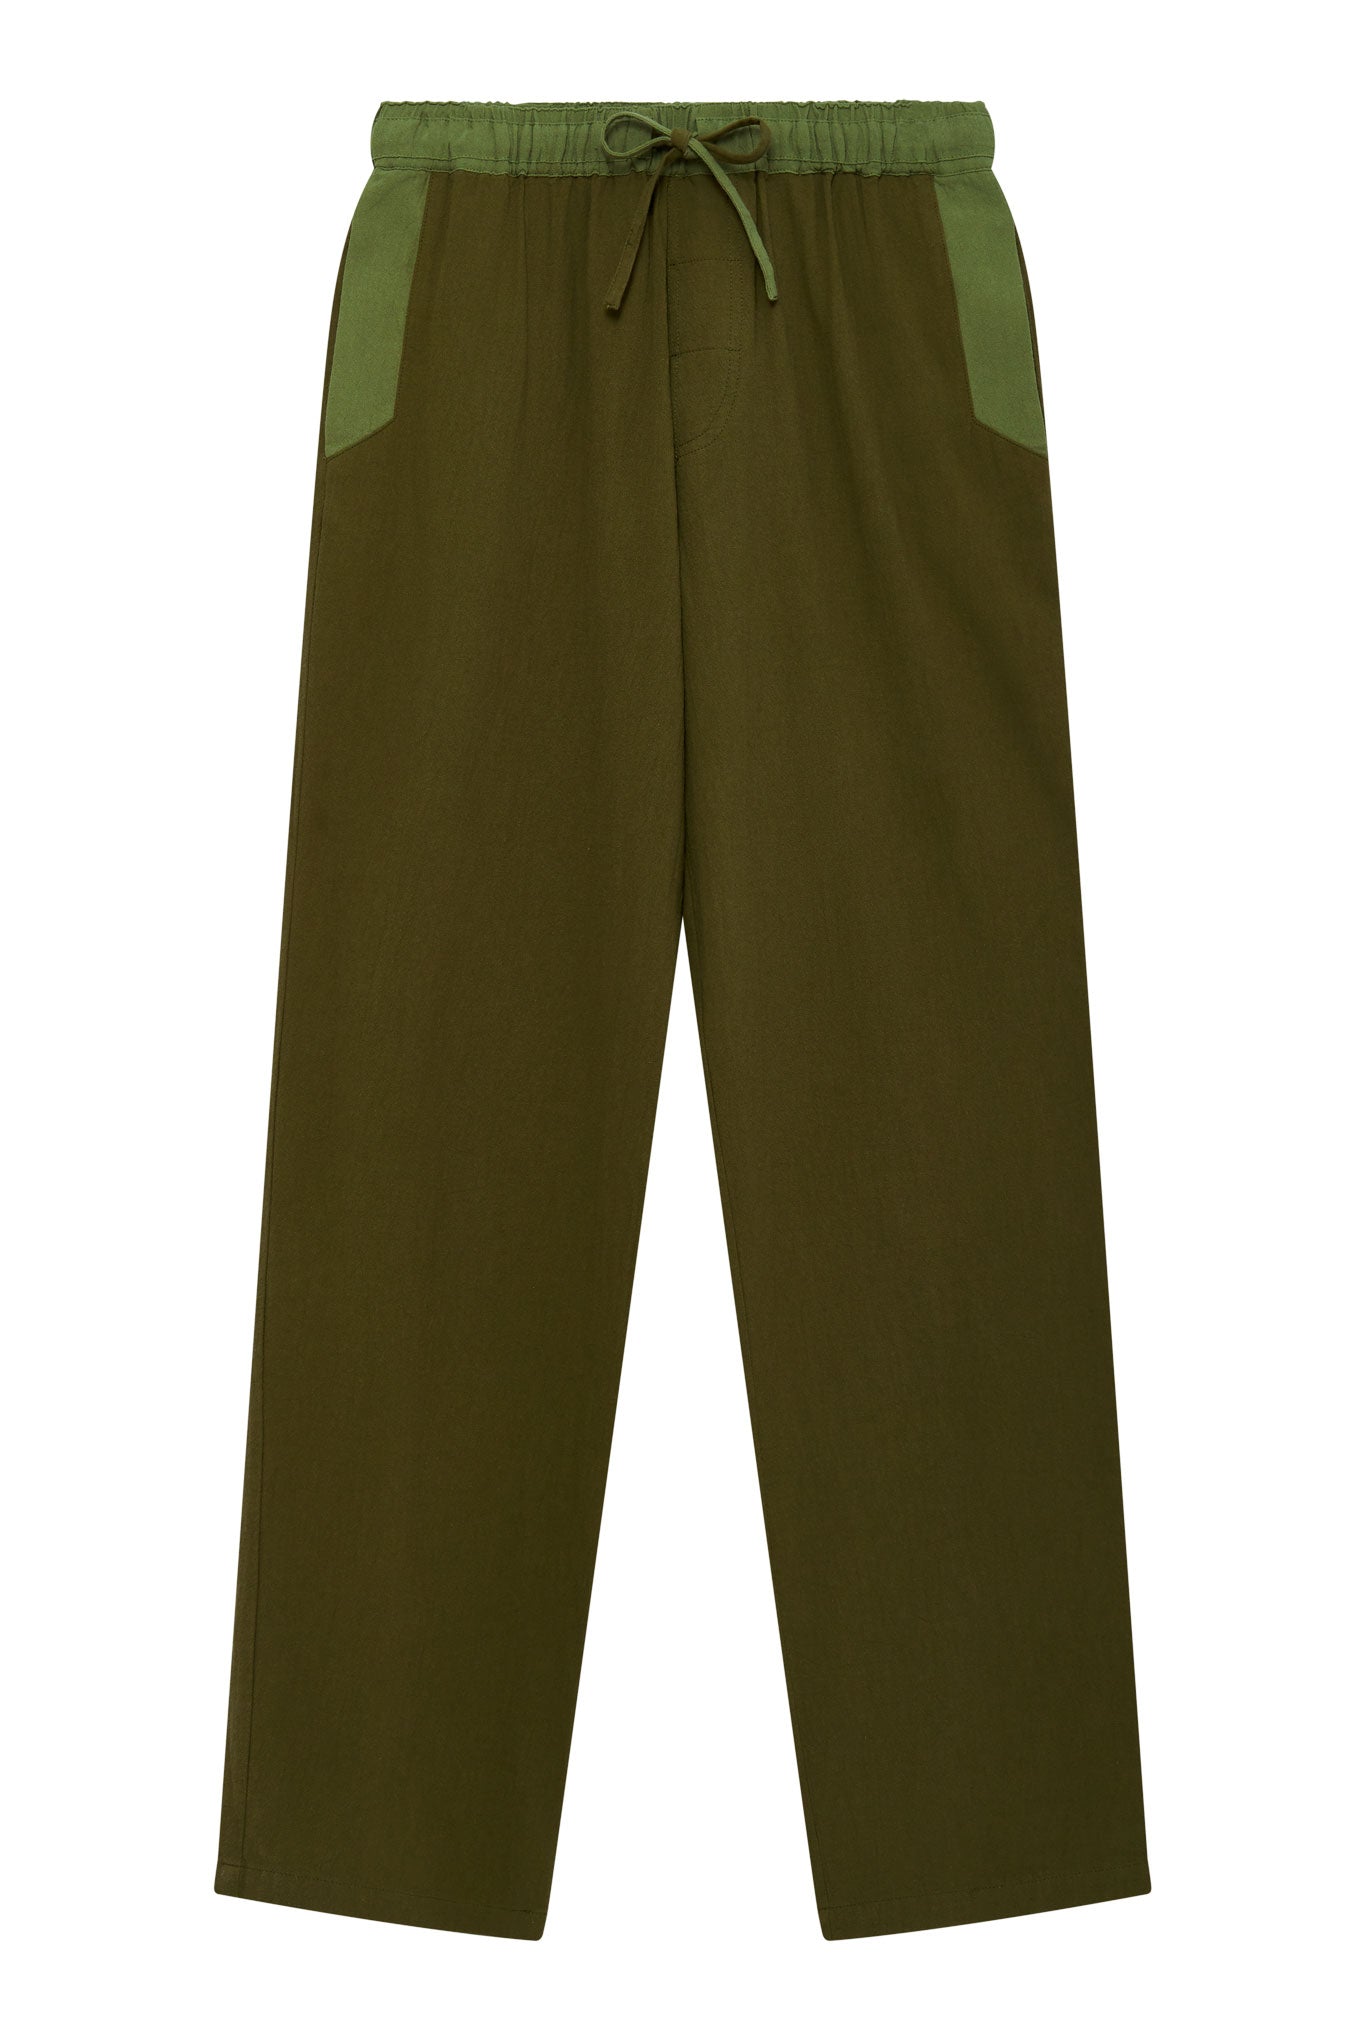 Grüne Hosen Joshua aus 100% Bio-Baumwolle von Komodo